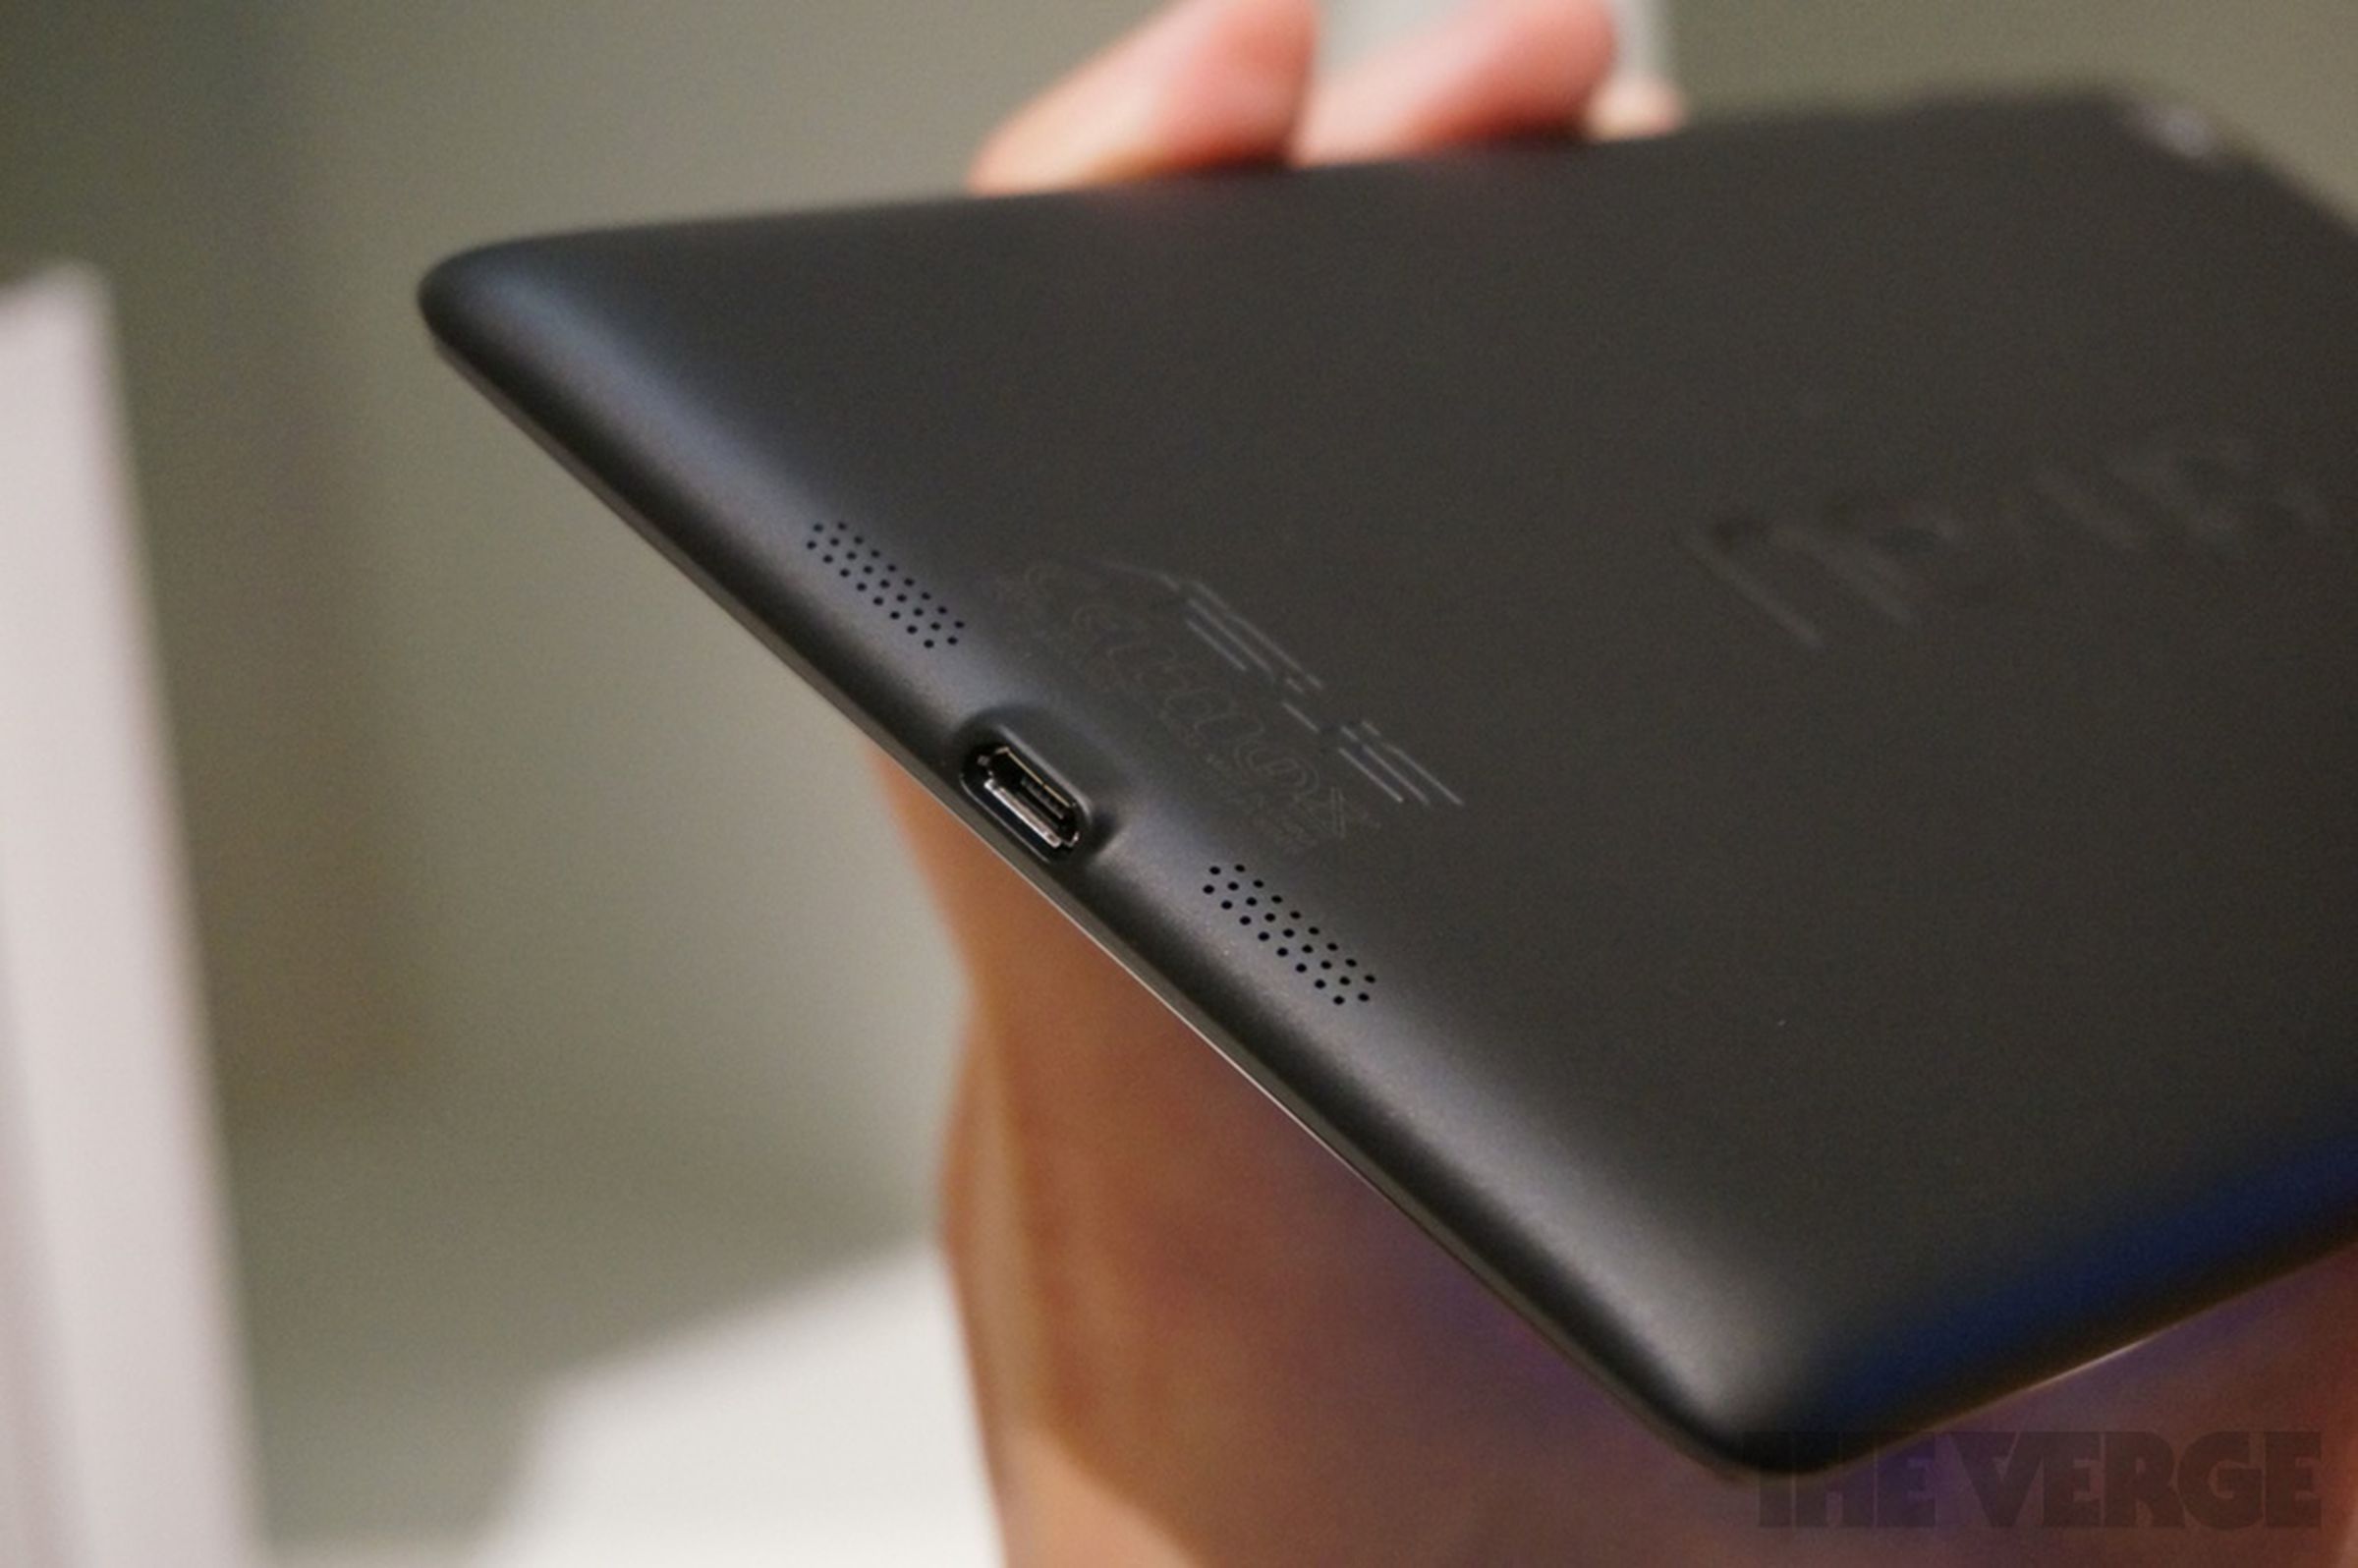 Nexus 7 hands-on photos